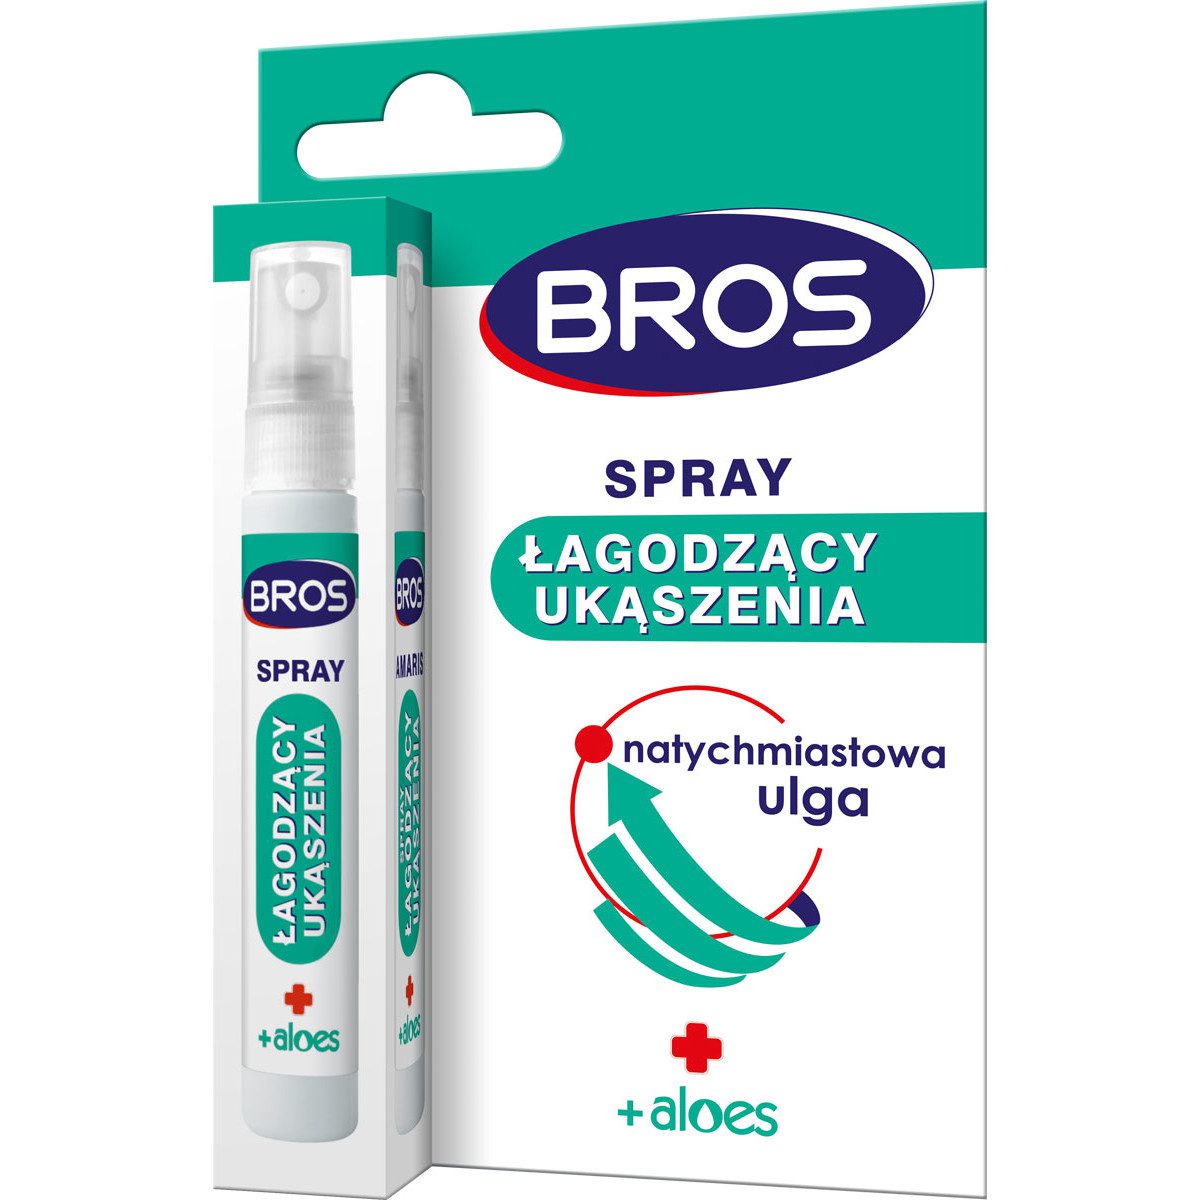 Bros Amaris spray łagodzący ukąszenia 8ml